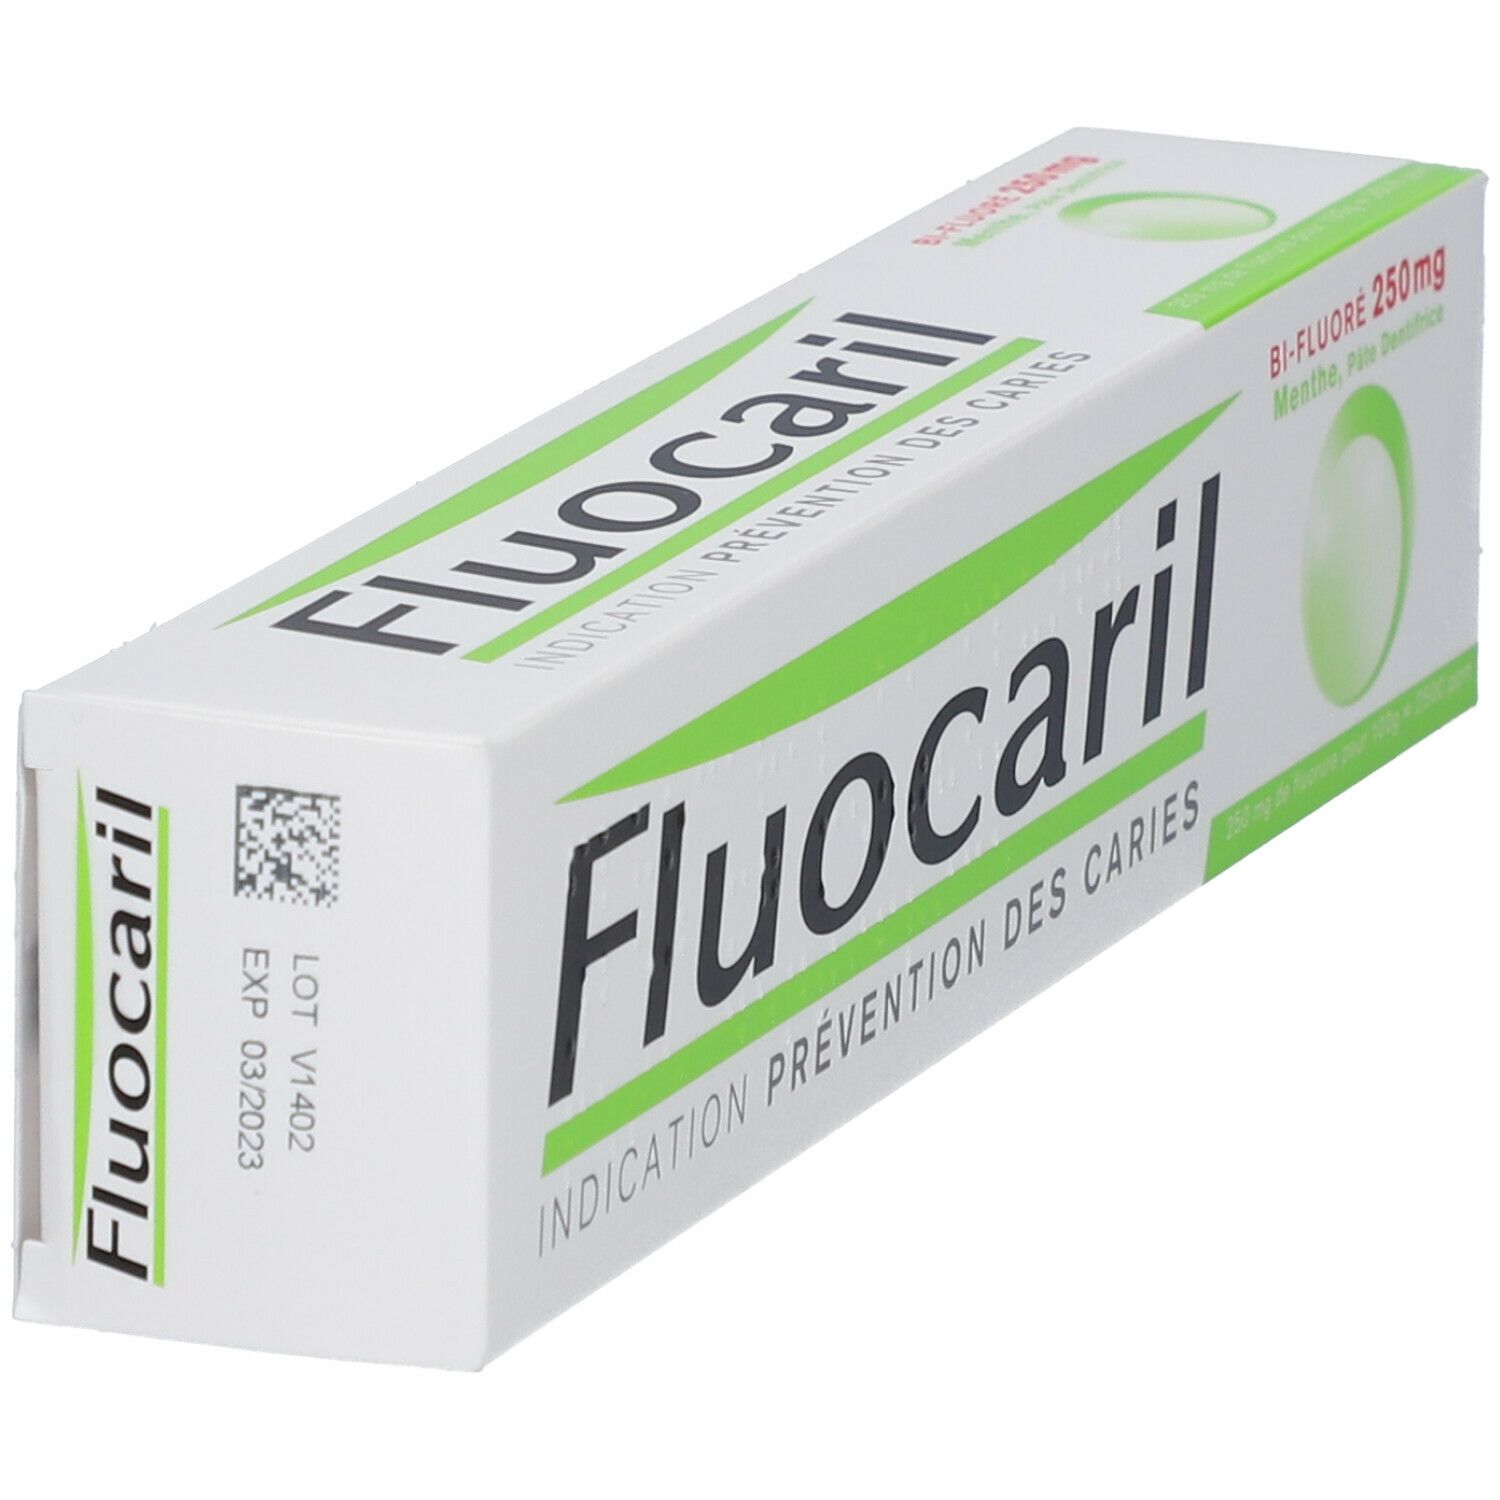 Fluocaril Bi-Fluoré 250 mg Pâte Dentifrice Menthe